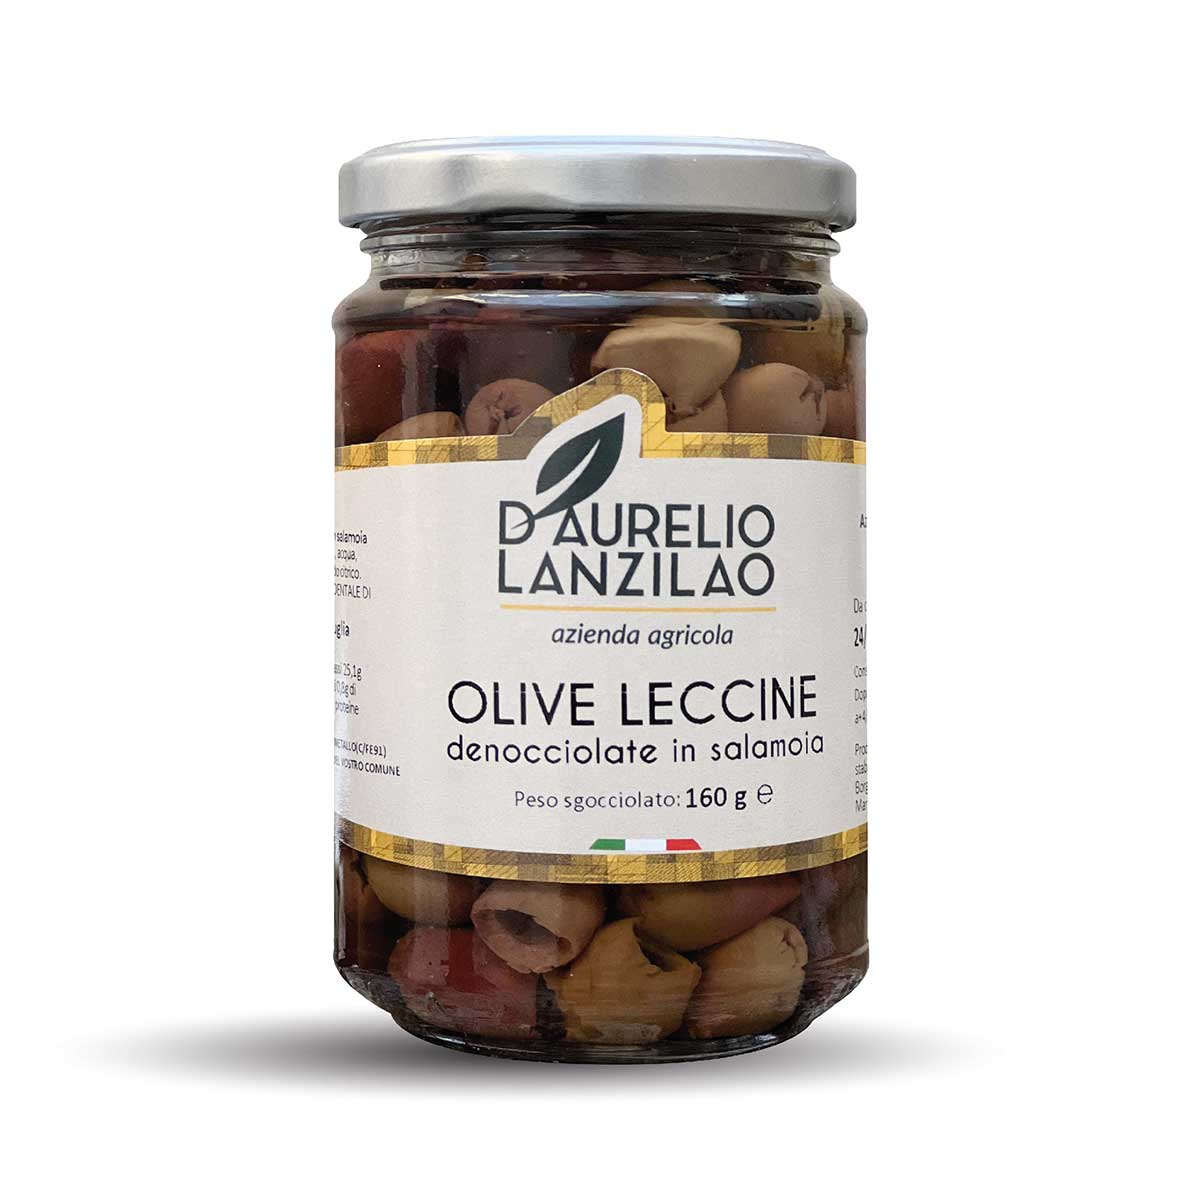 Olive leccine denocciolate in salamoia